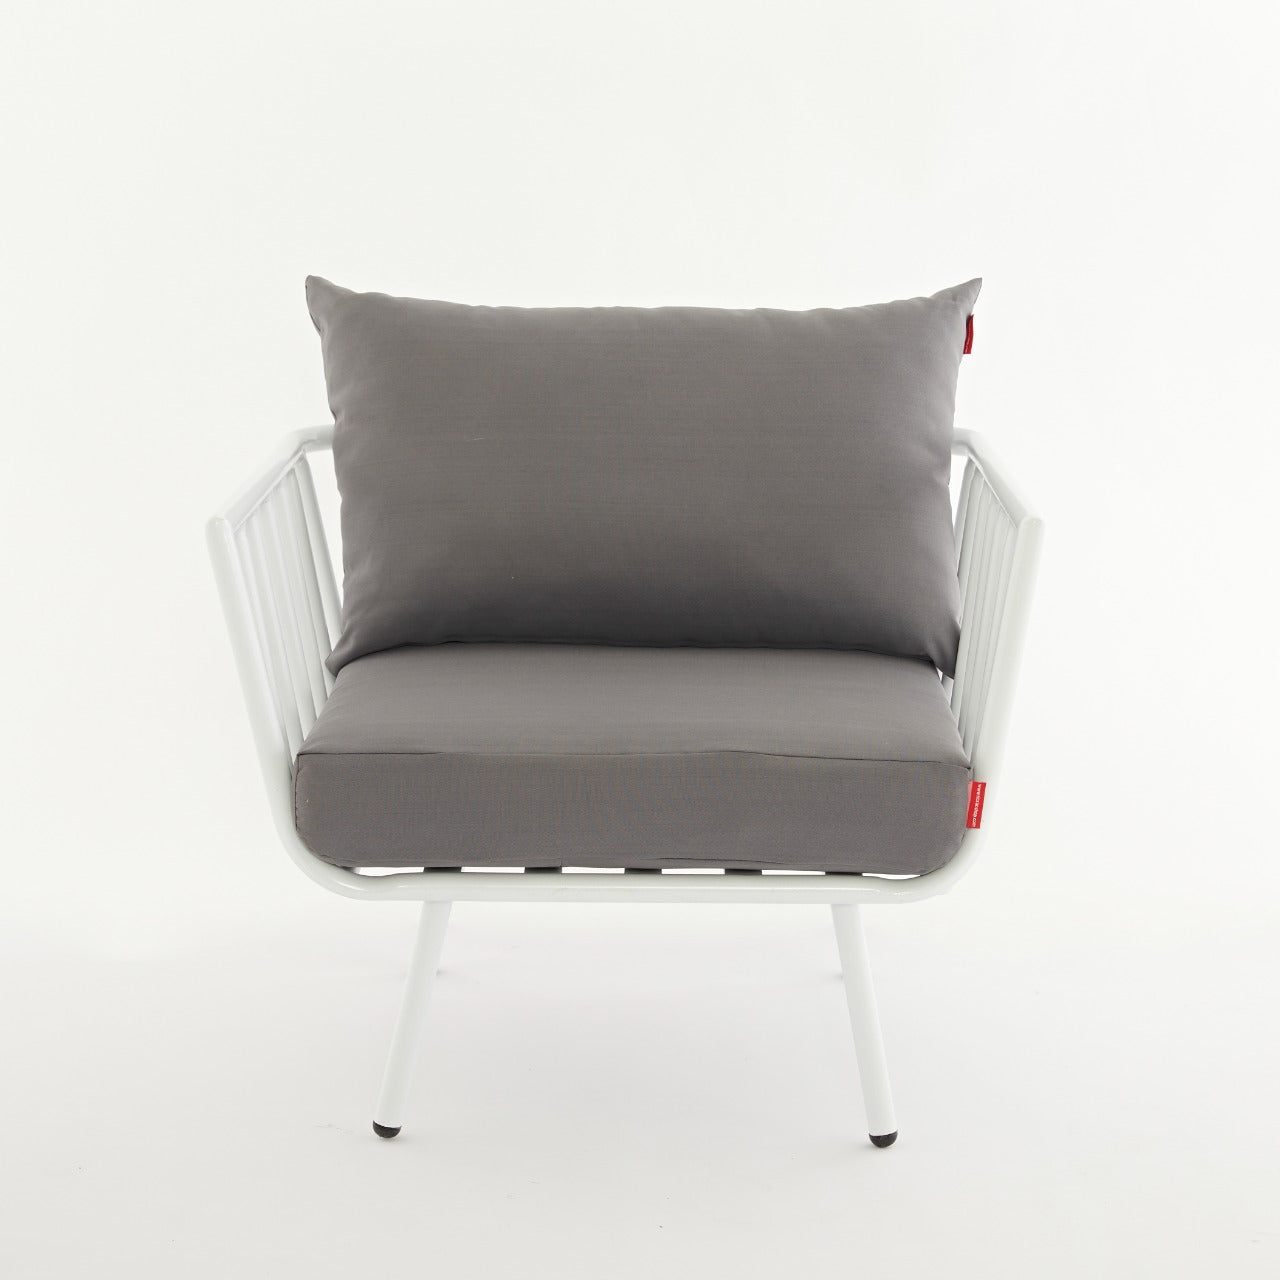 راكو -  طقم أثاث مكون من أريكة، كرسي جانبي، طاولة